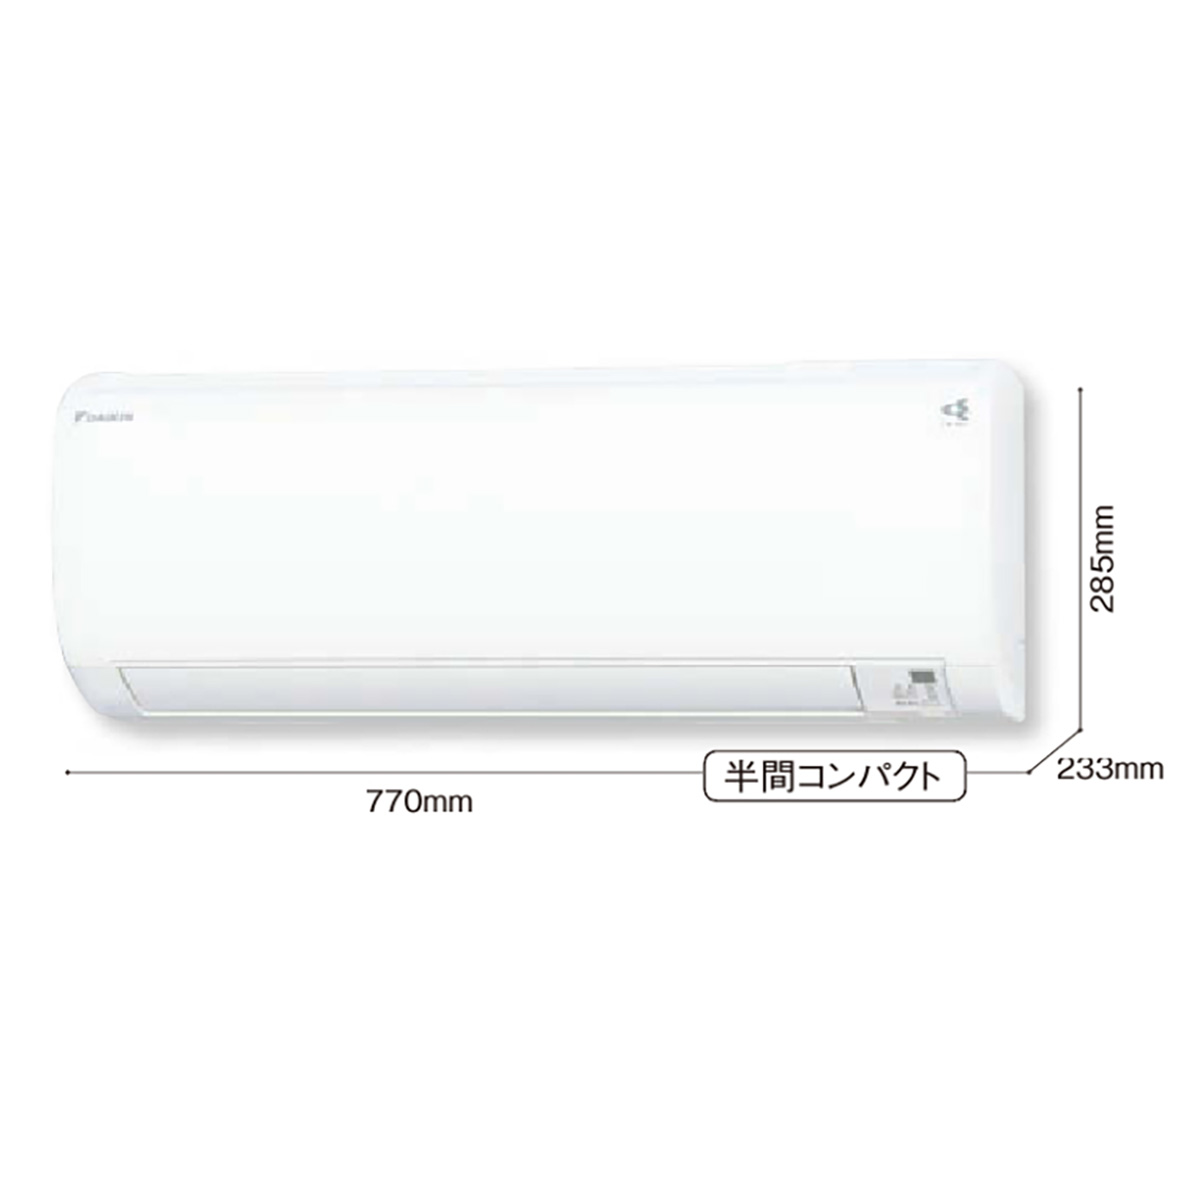 ダイキン ルームエアコン Eシリーズ | 株式会社キツタカ